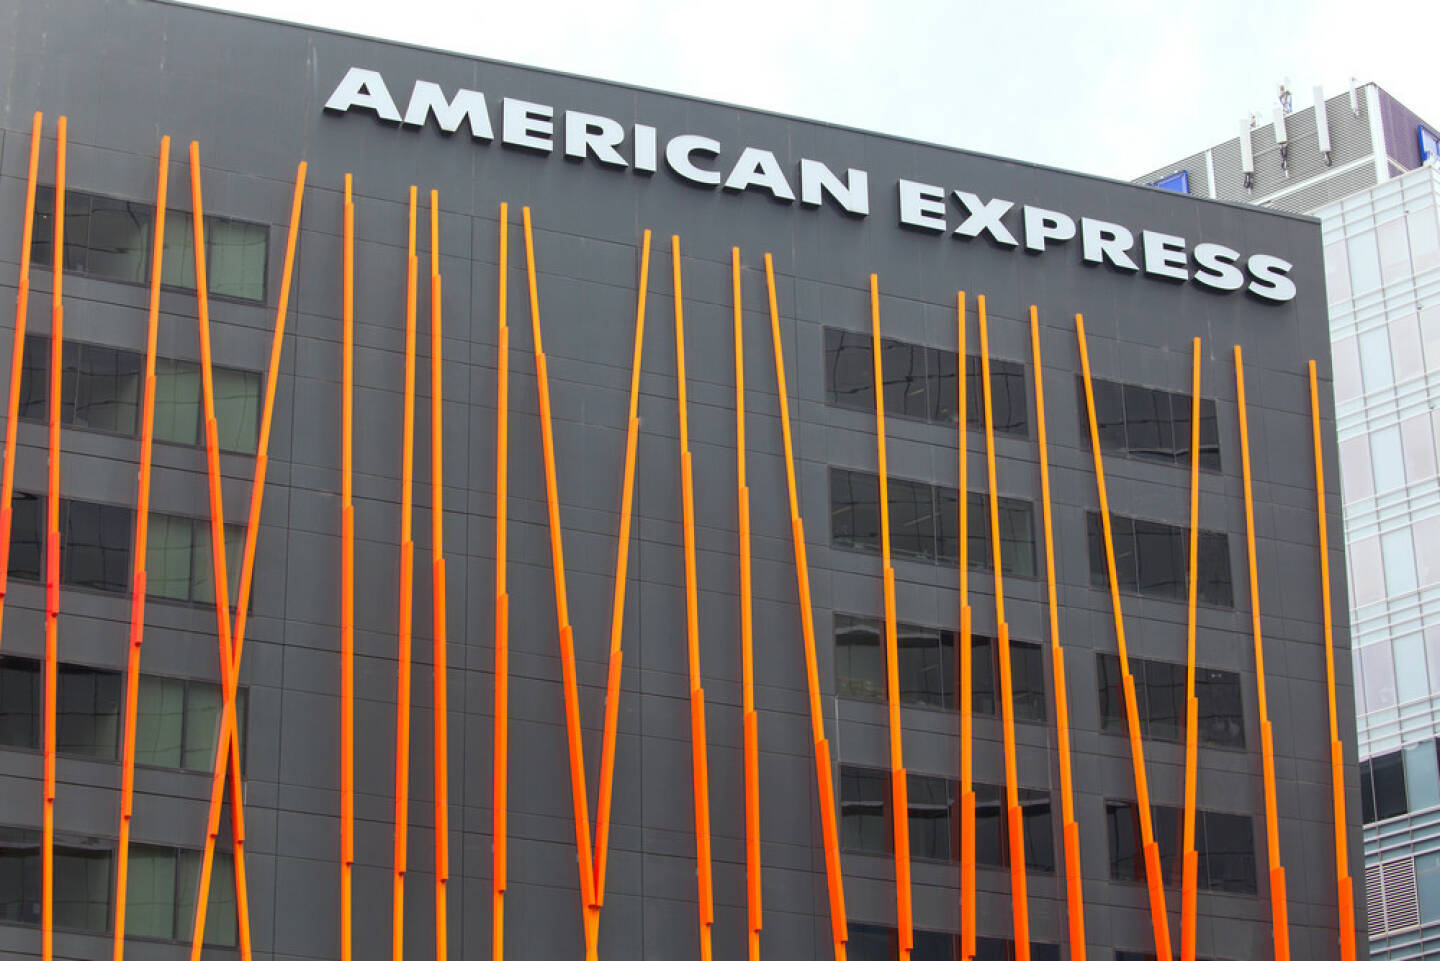 American Express, <a href=http://www.shutterstock.com/gallery-469021p1.html?cr=00&pl=edit-00>Gordon Bell</a> / <a href=http://www.shutterstock.com/?cr=00&pl=edit-00>Shutterstock.com</a> , Gordon Bell / Shutterstock.com